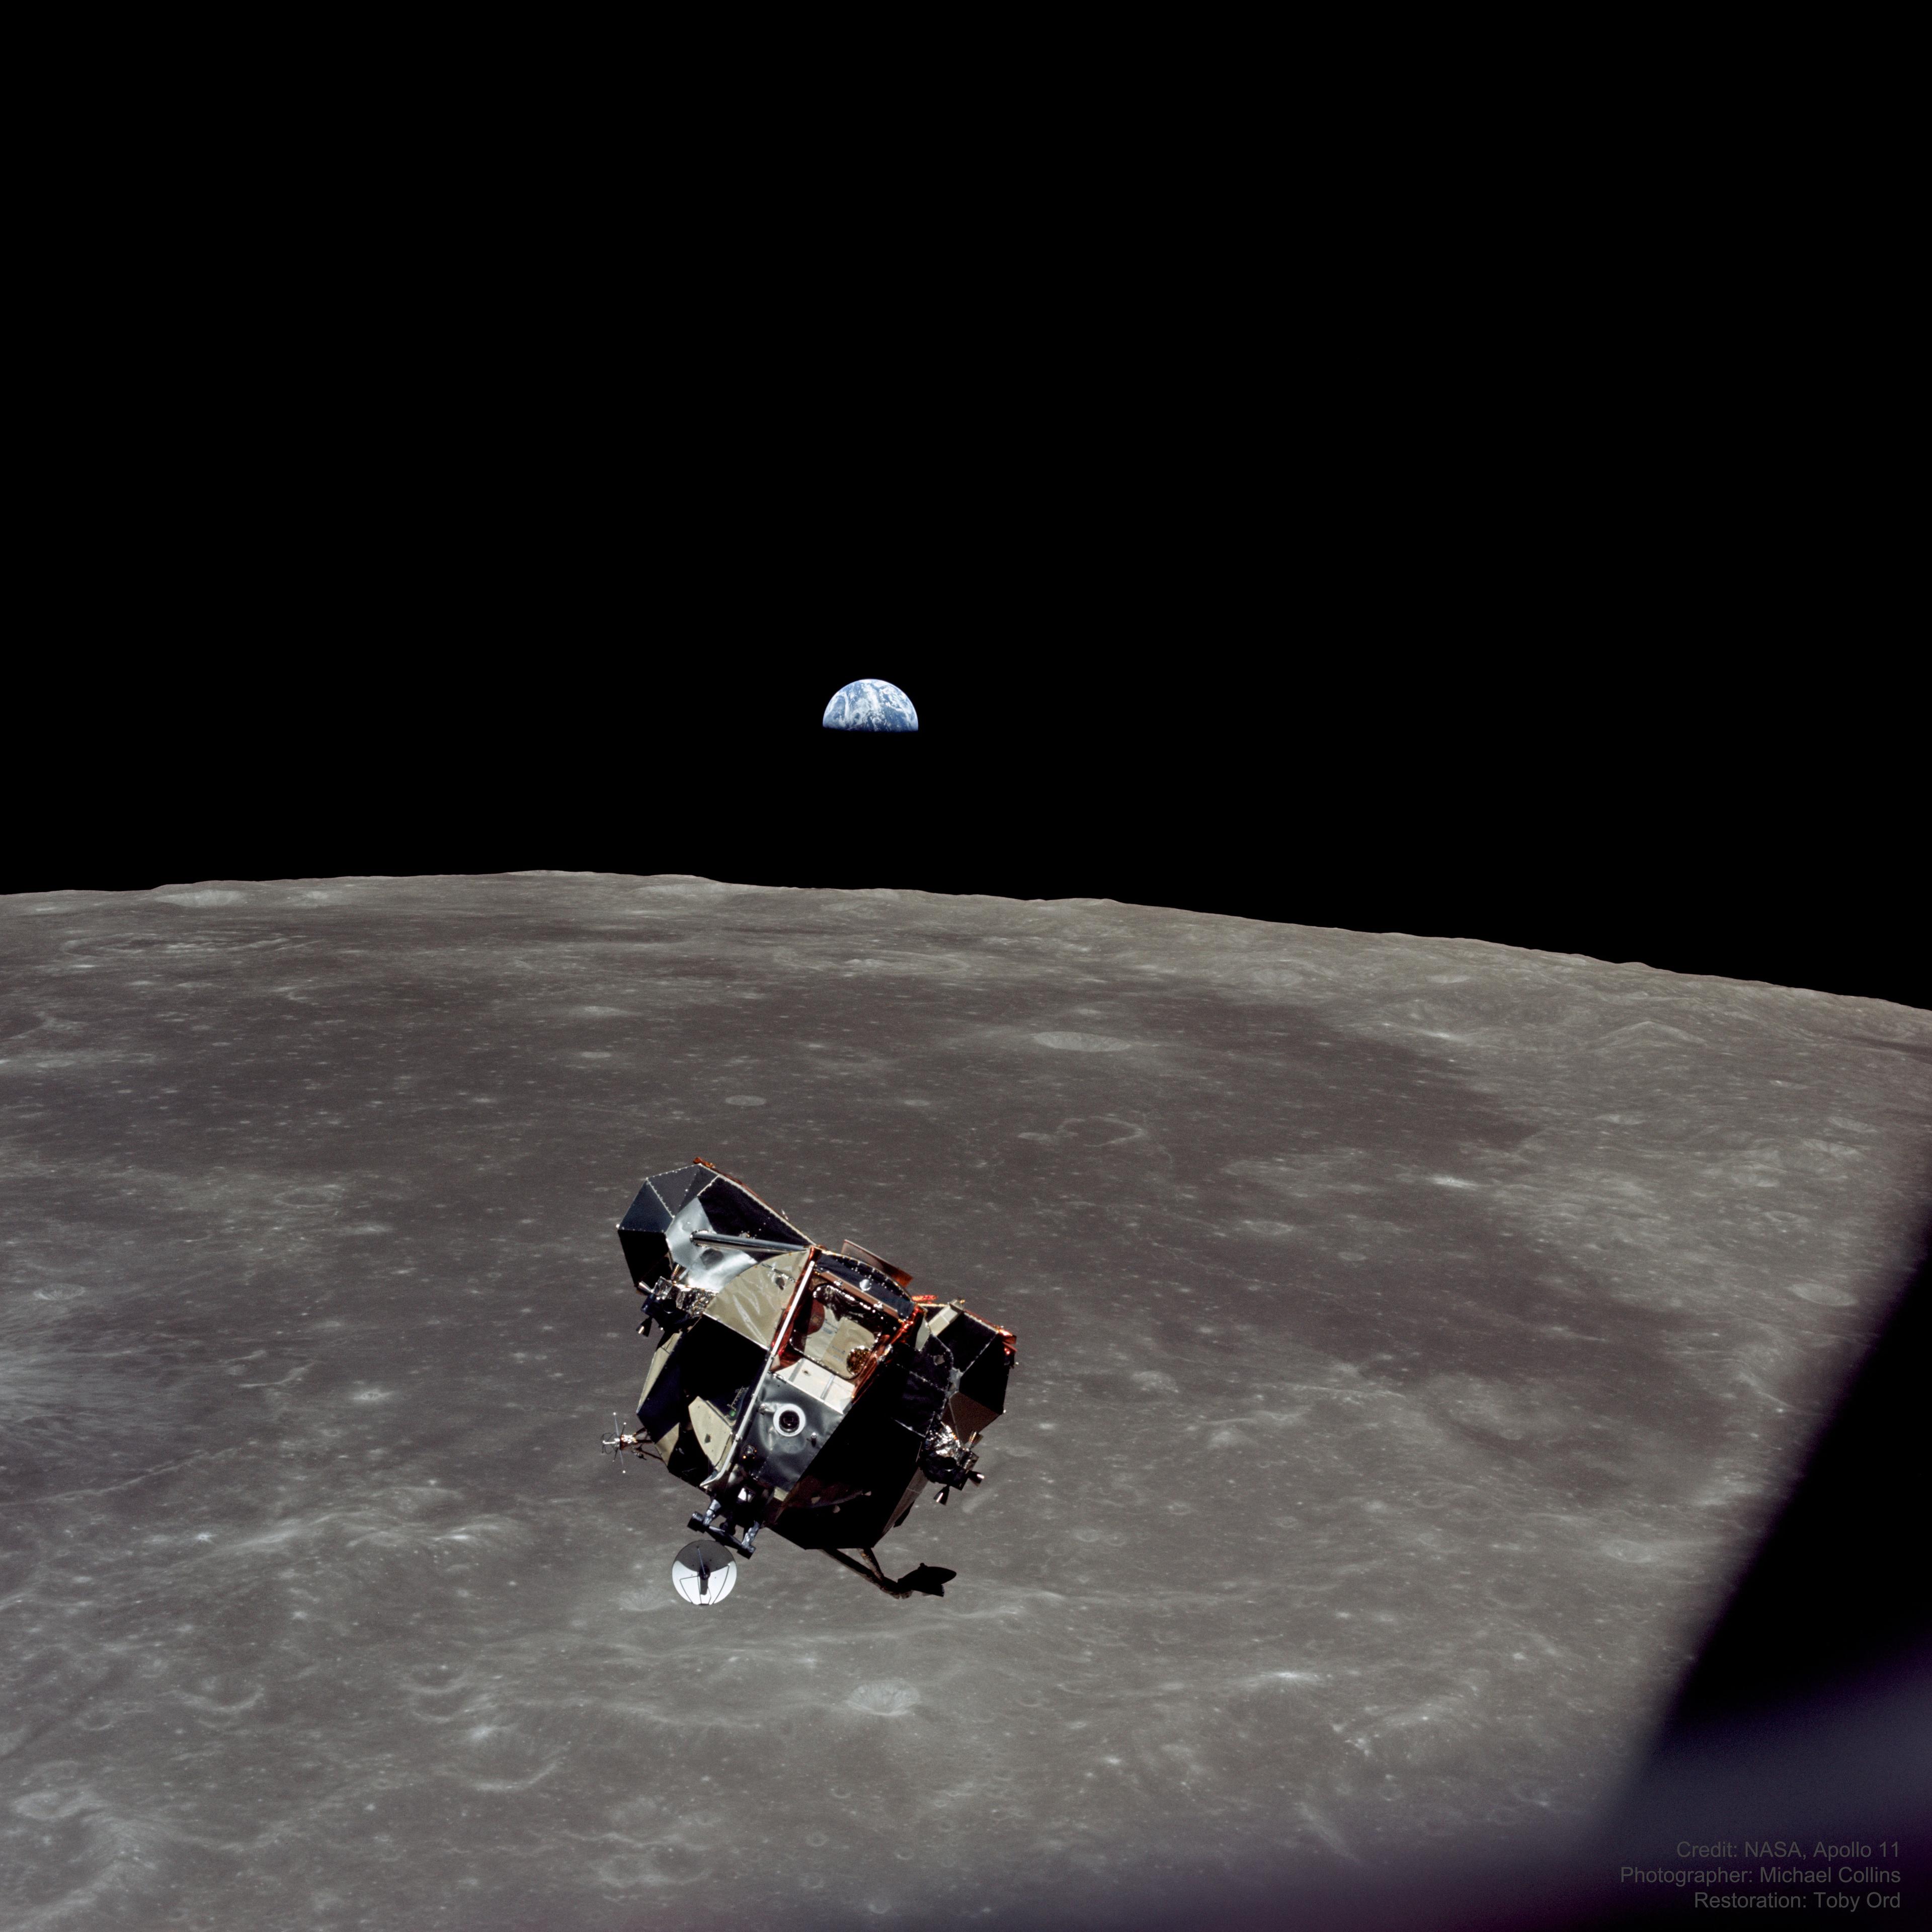 مرحلة الصعود الخاصّة بالوحدة القمريّة لمهمّة أپولو 11 وهي تقترب من وحدة القيادة والخدمة التي في مدار القمر والتي التقطت منها الصورة، ويظهر من تحتها القمر الذي تمتدّ على سطحه منطقةٌ صقيلة داكنة اللون، وتلوح الأرض خلفها في البعيد بنصفها العلوي المُضاء.